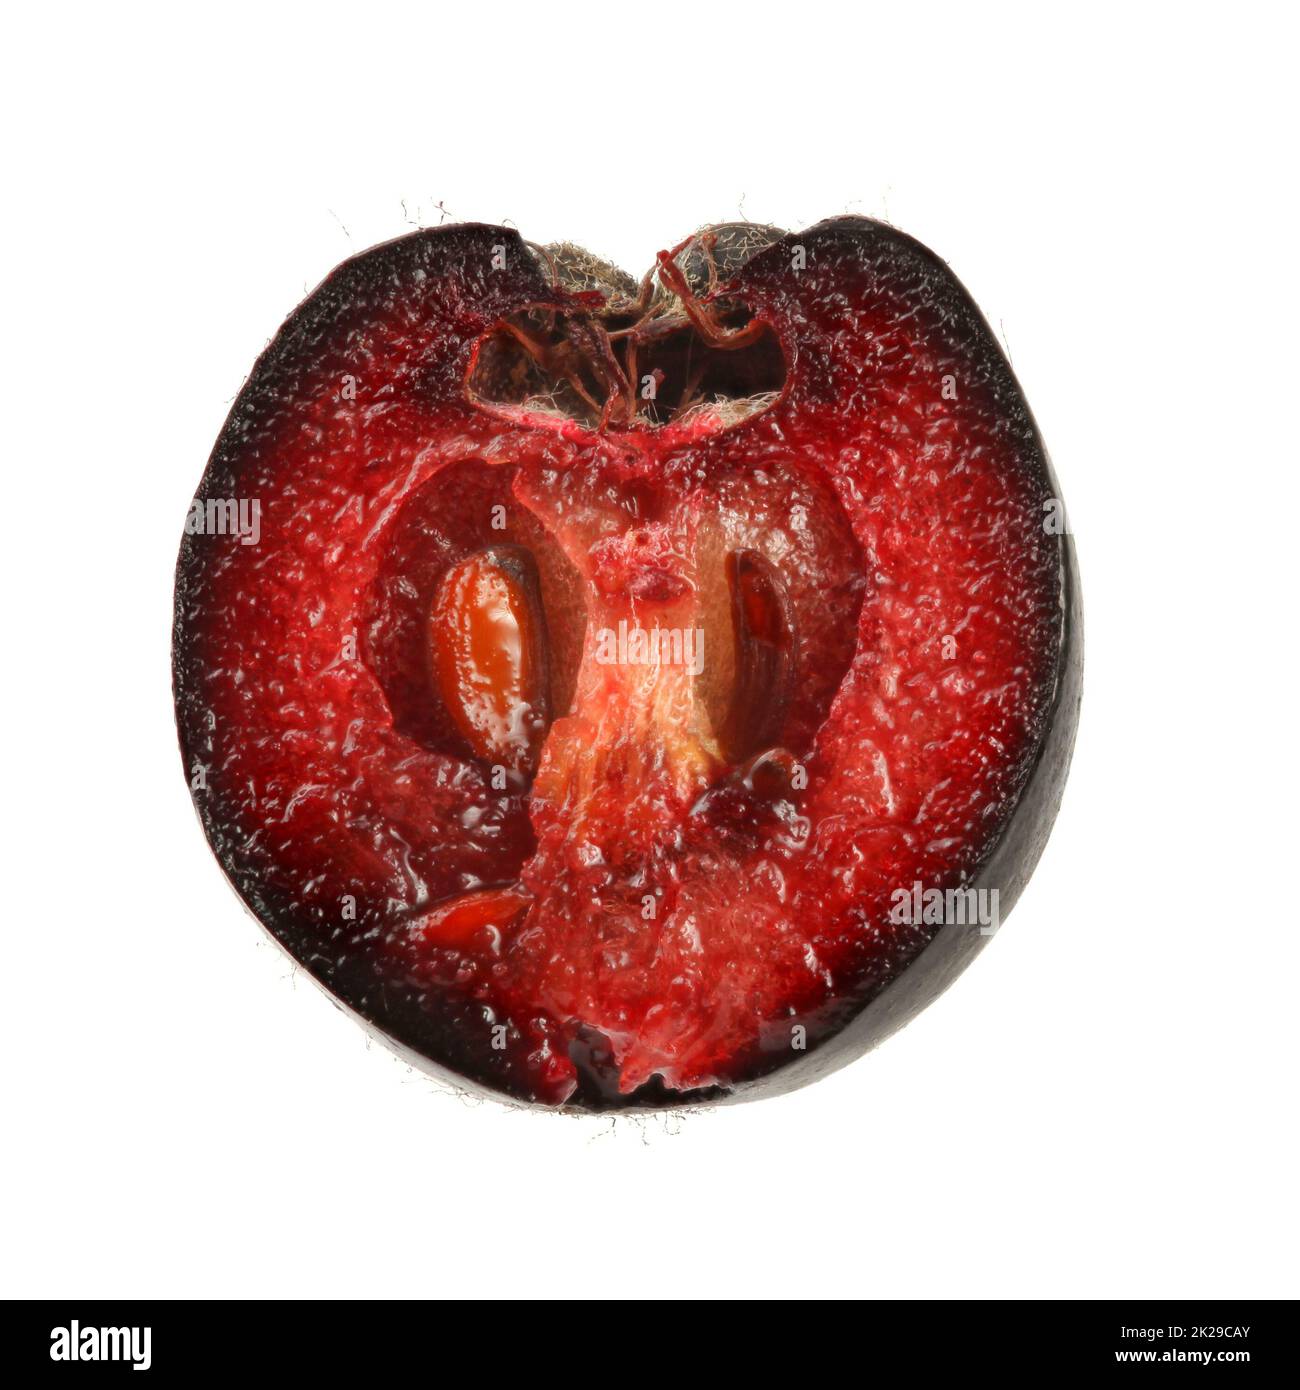 Aronia (apfelbeere) Frucht halbieren, auf weißem Hintergrund. Nahaufnahme Detail. Stockfoto